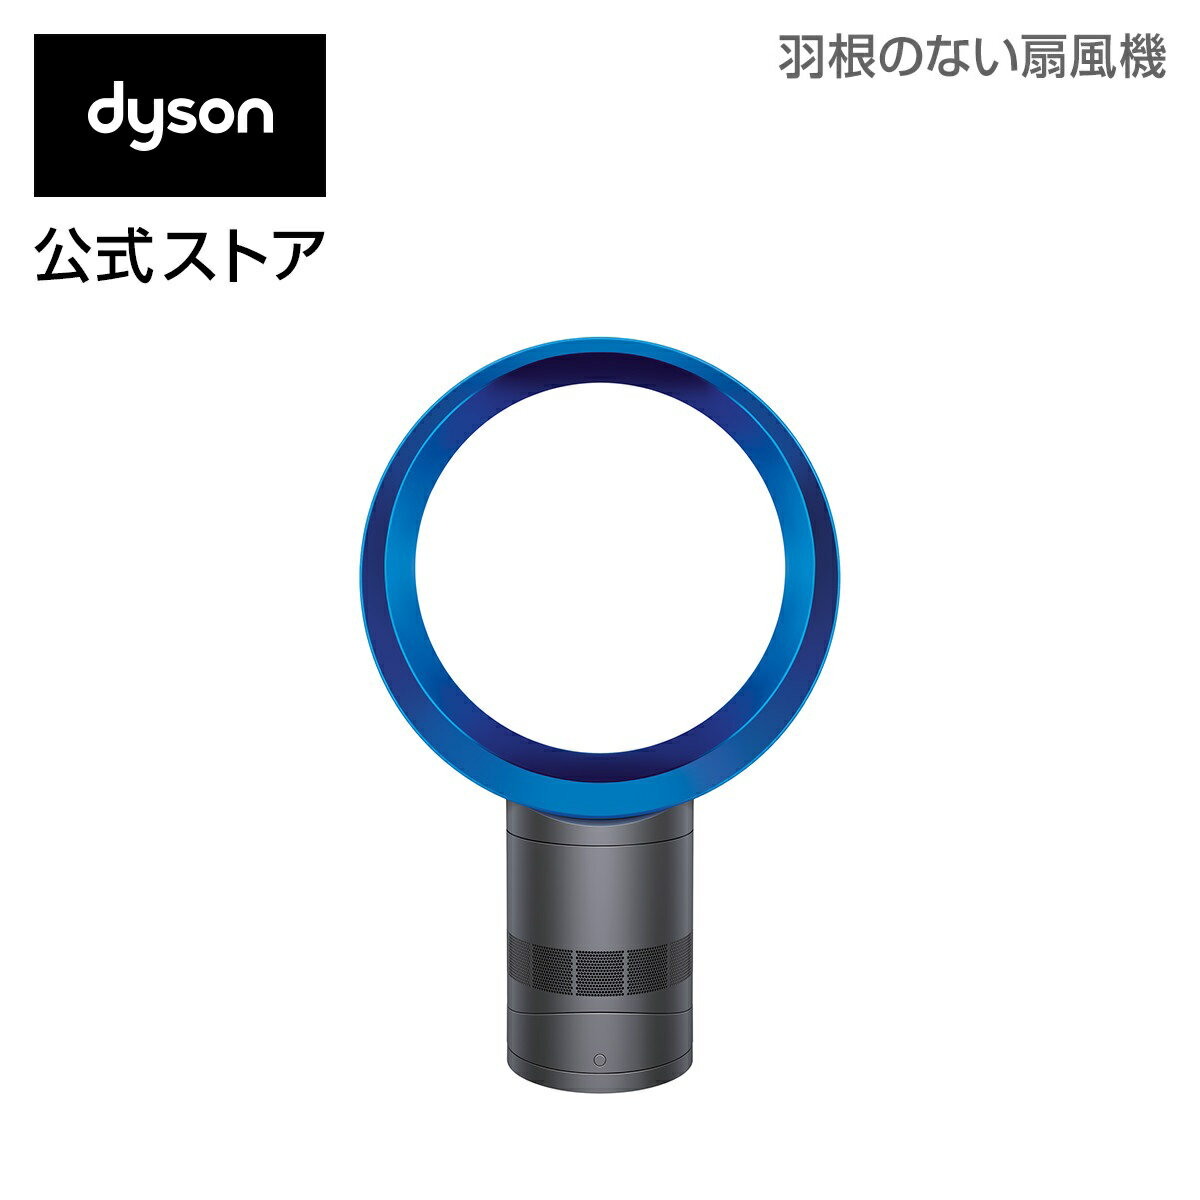 ダイソン Dyson AM06 テーブルファン 扇風機 AM06 DC 30 IB アイアン/サテンブルー